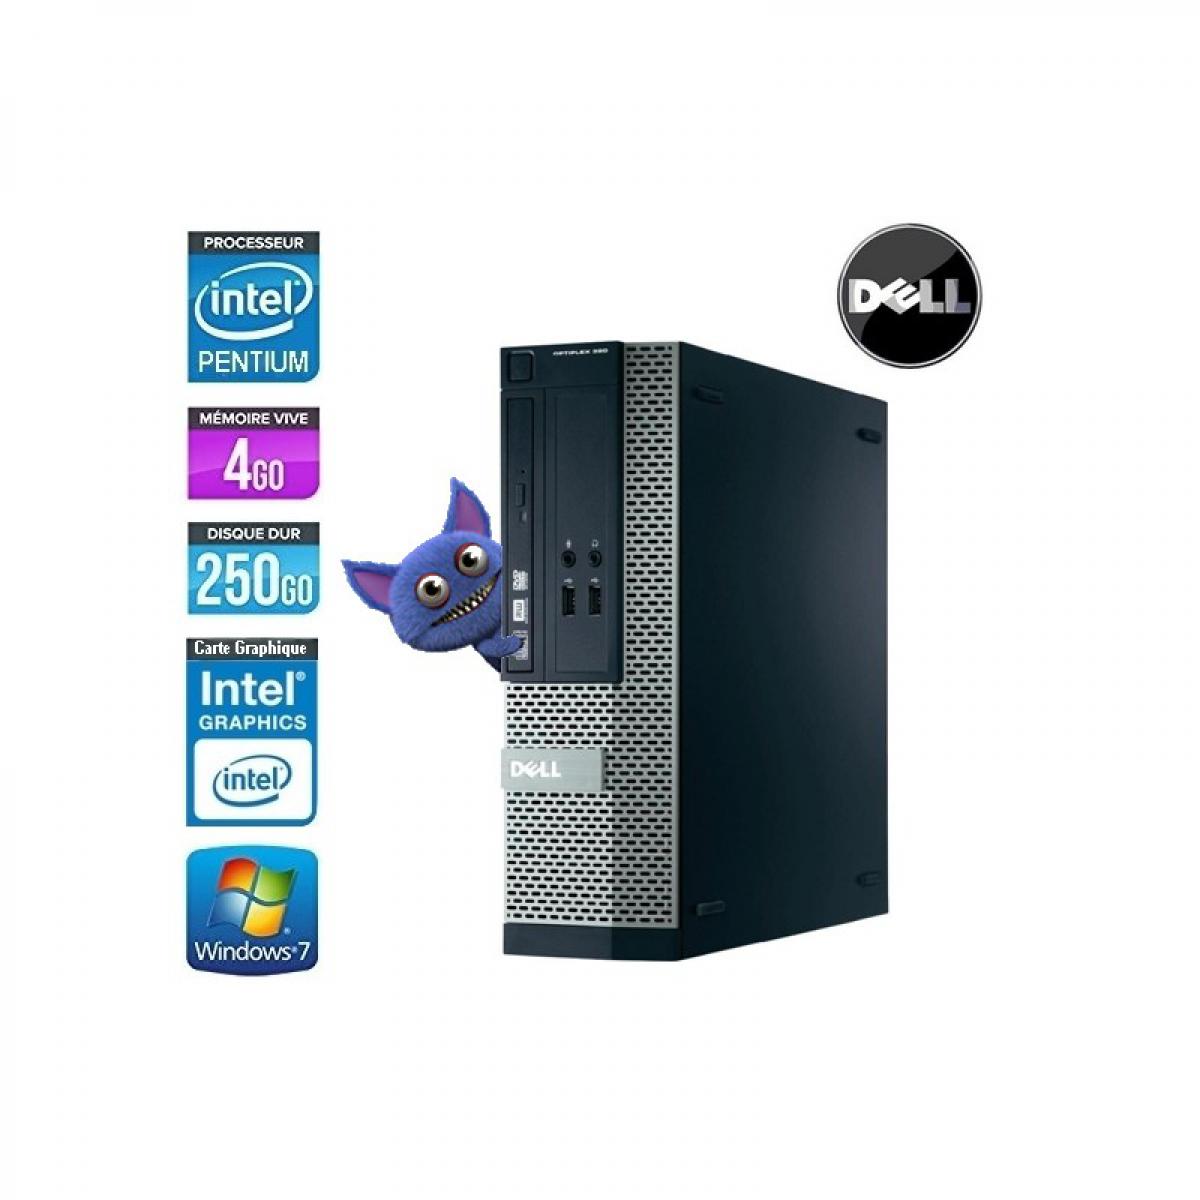 Dell - DELL OPTIPLEX 390 SFF PENTIUM G630 2.7Ghz - PC Fixe